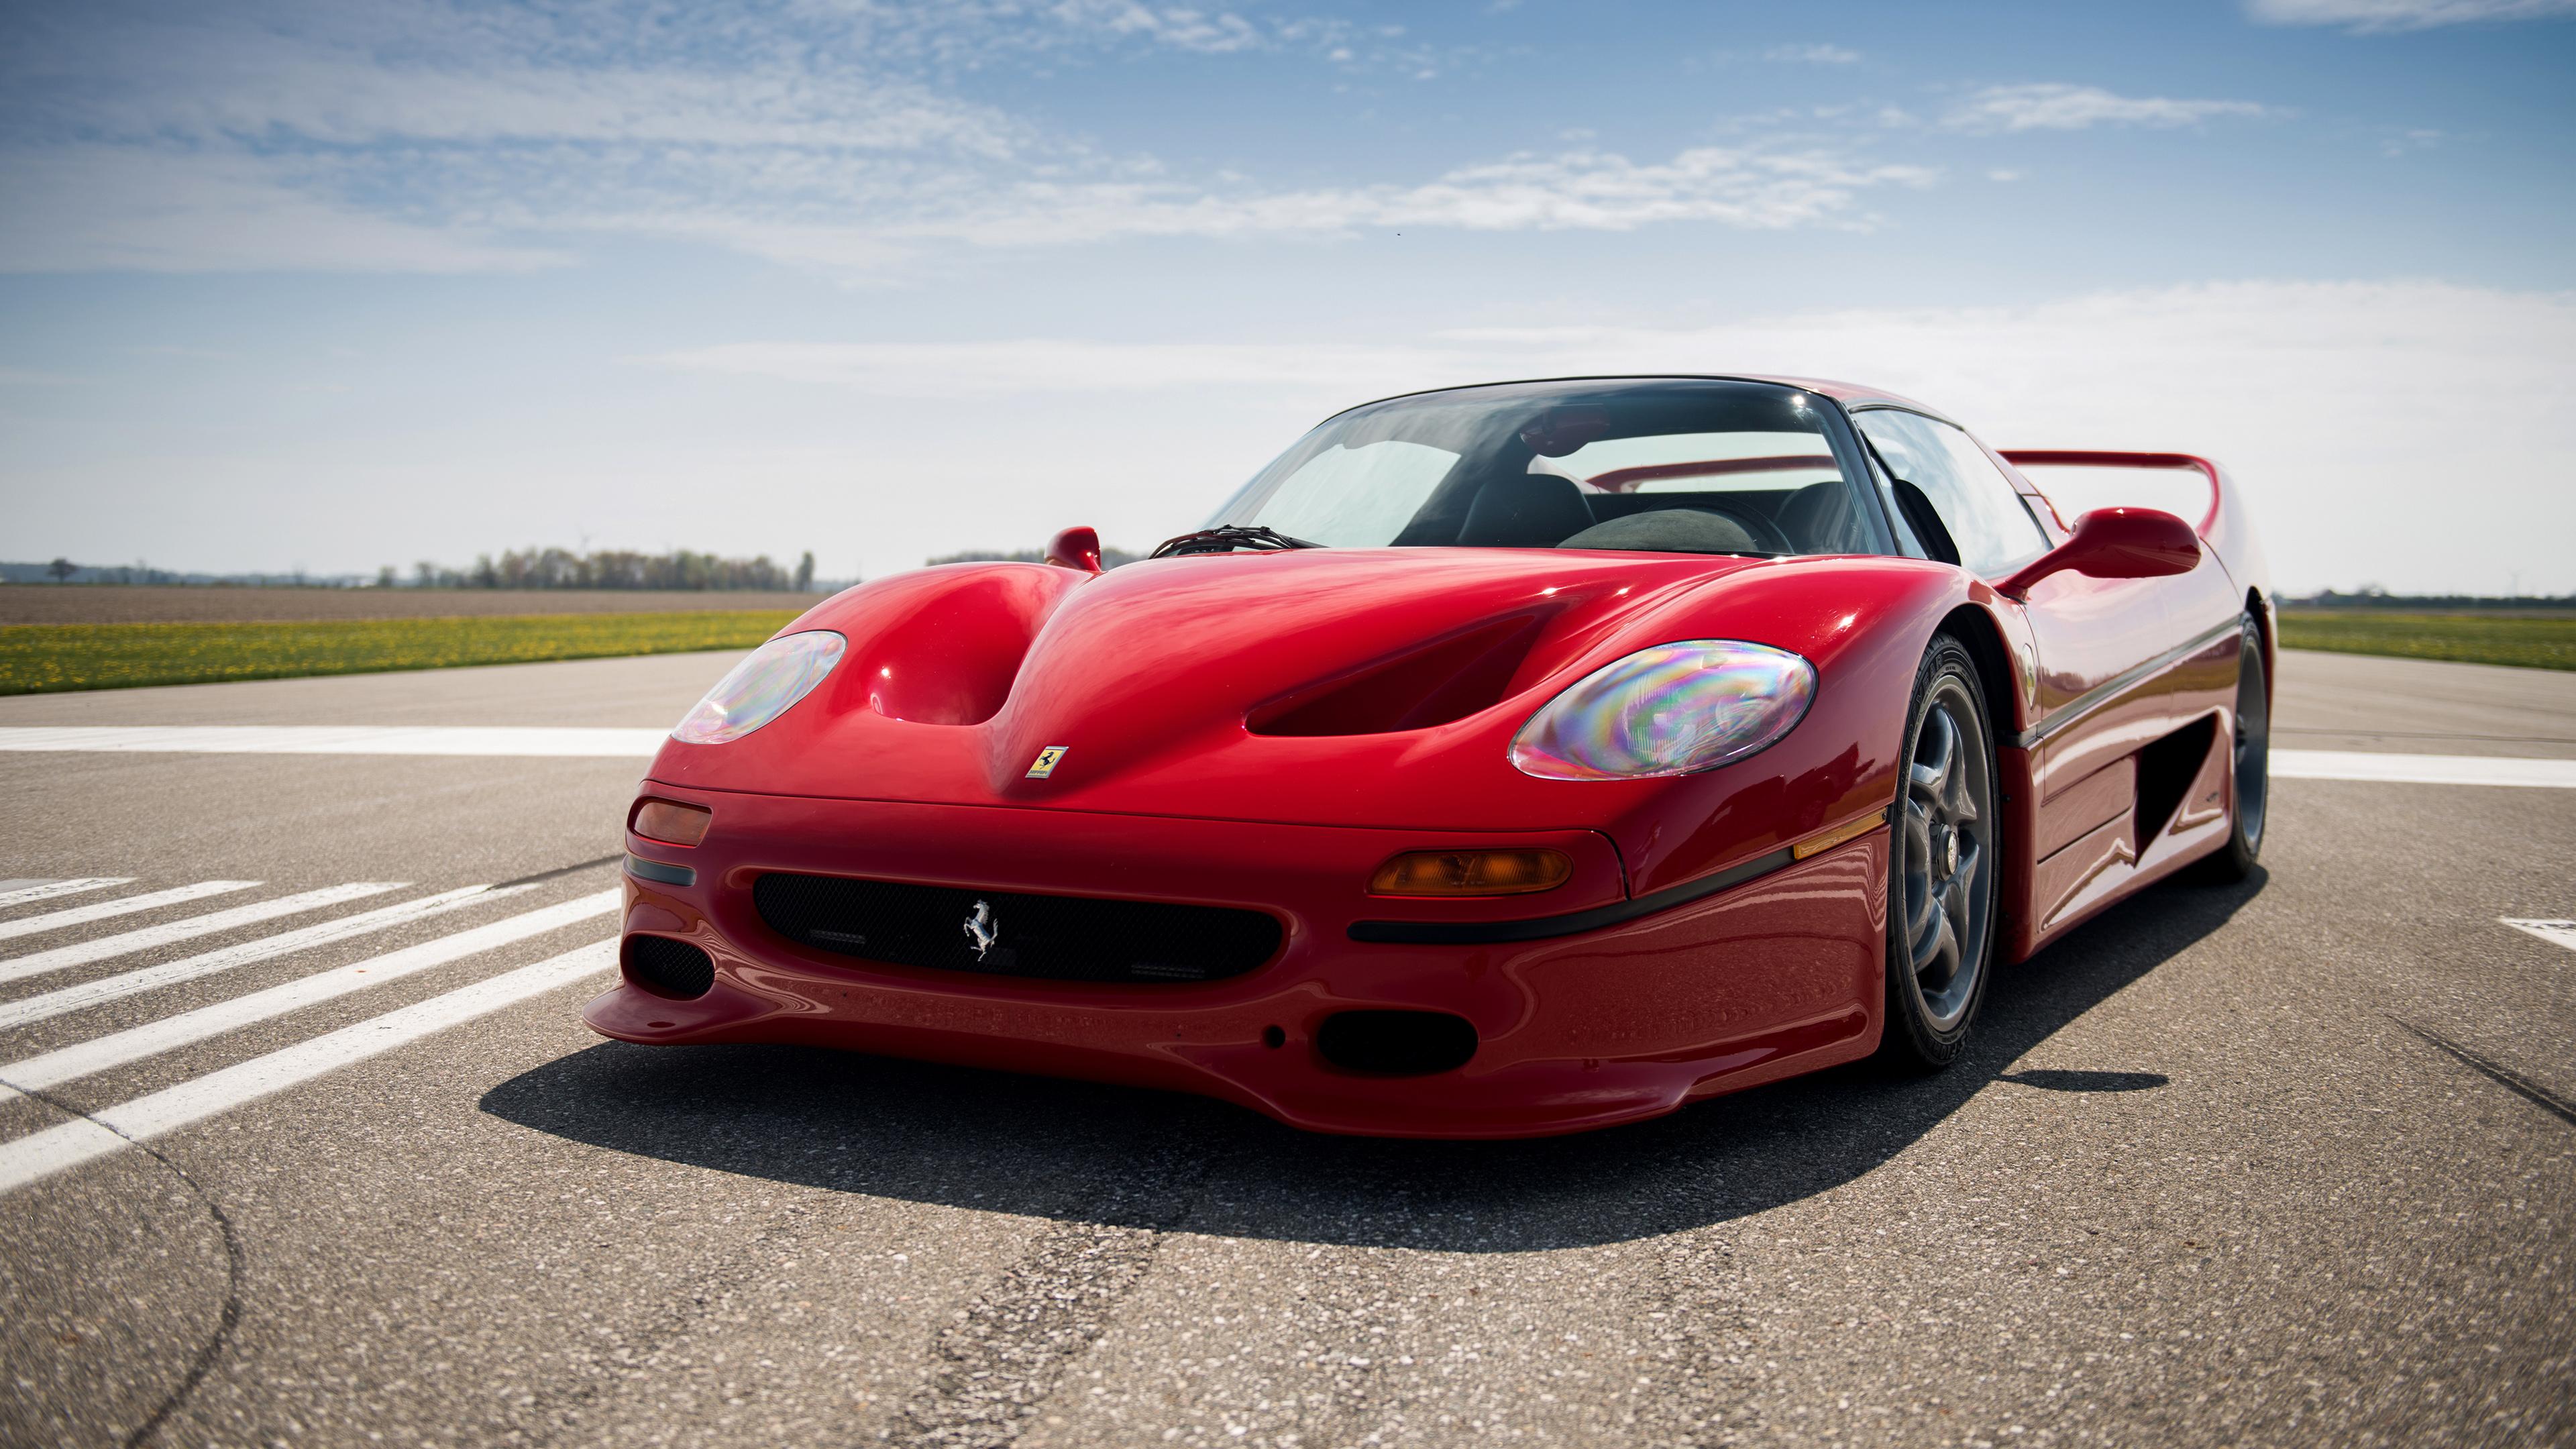 3840 x 2160 · jpeg - Ferrari F50 4K Wallpaper | HD Car Wallpapers | ID #6929